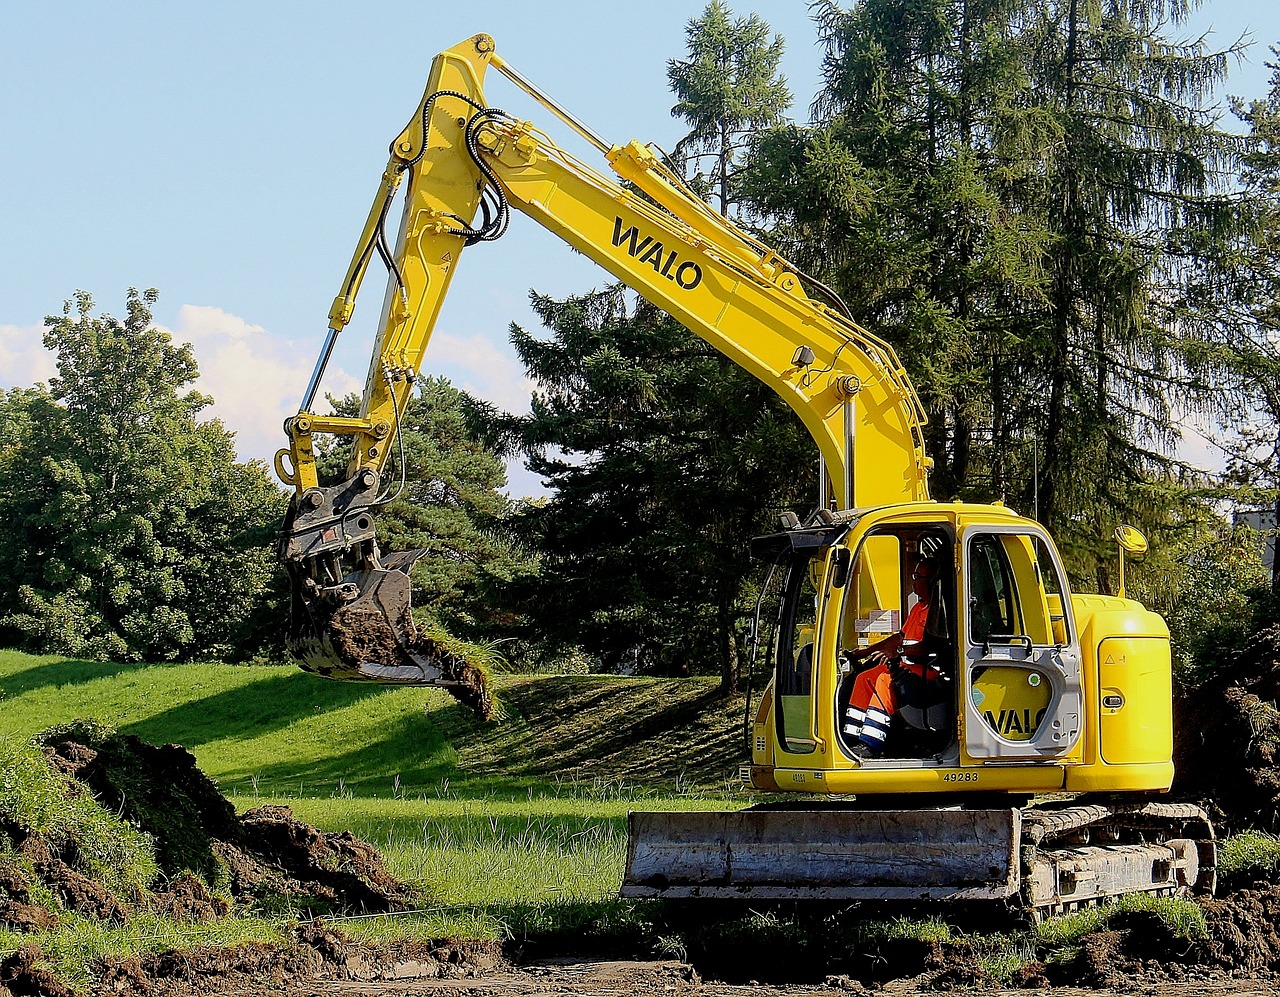 掘削とは？主な掘削の方法4つや掘削工事に使用する主な機械を紹介